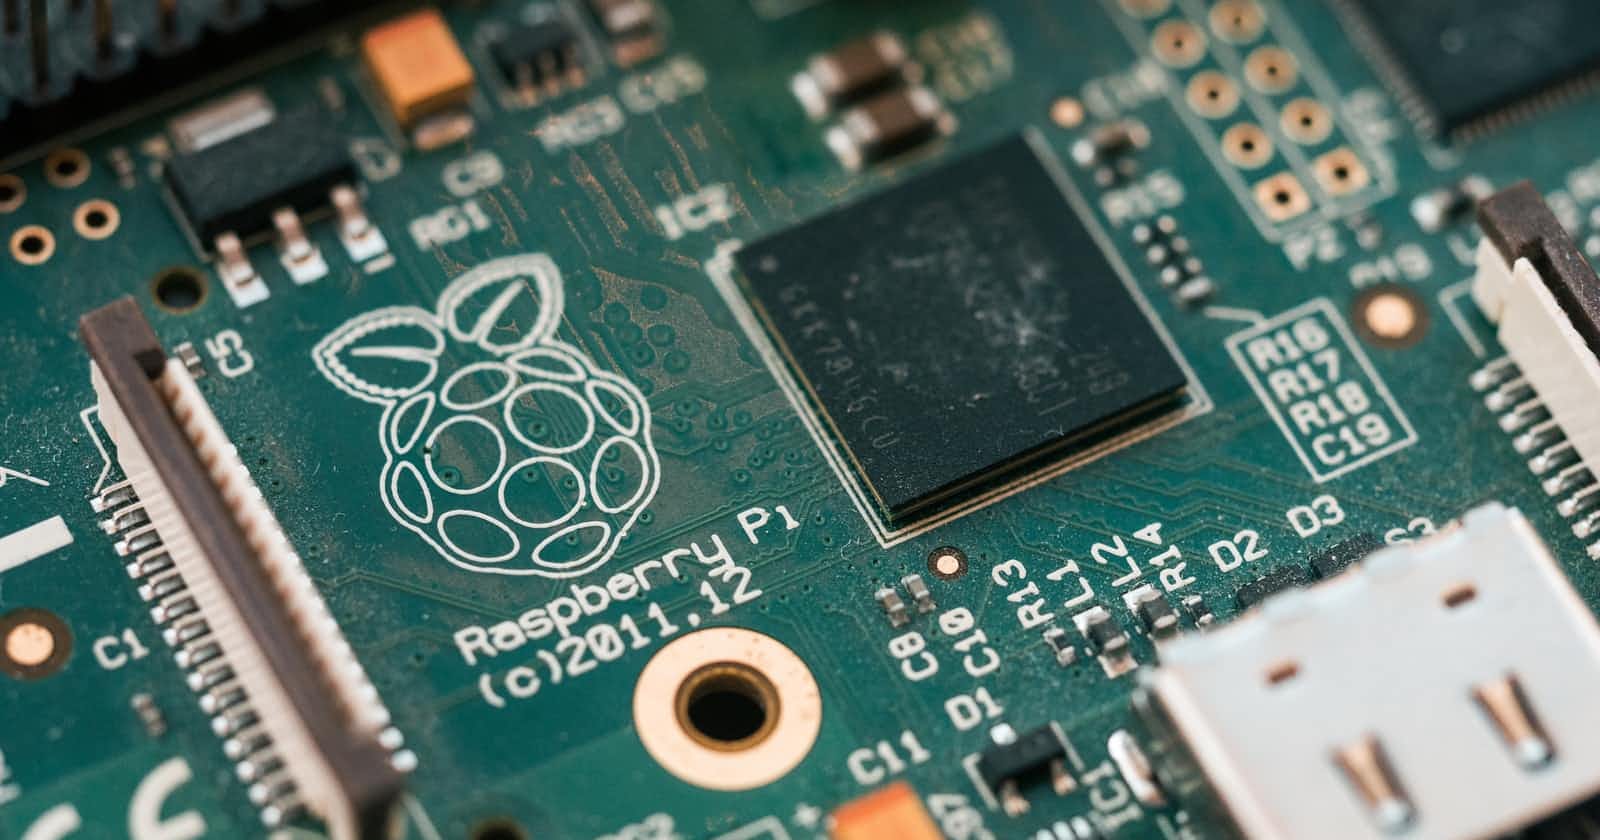 Step by Step Python 3.9.7 installation guide Raspberry Pi